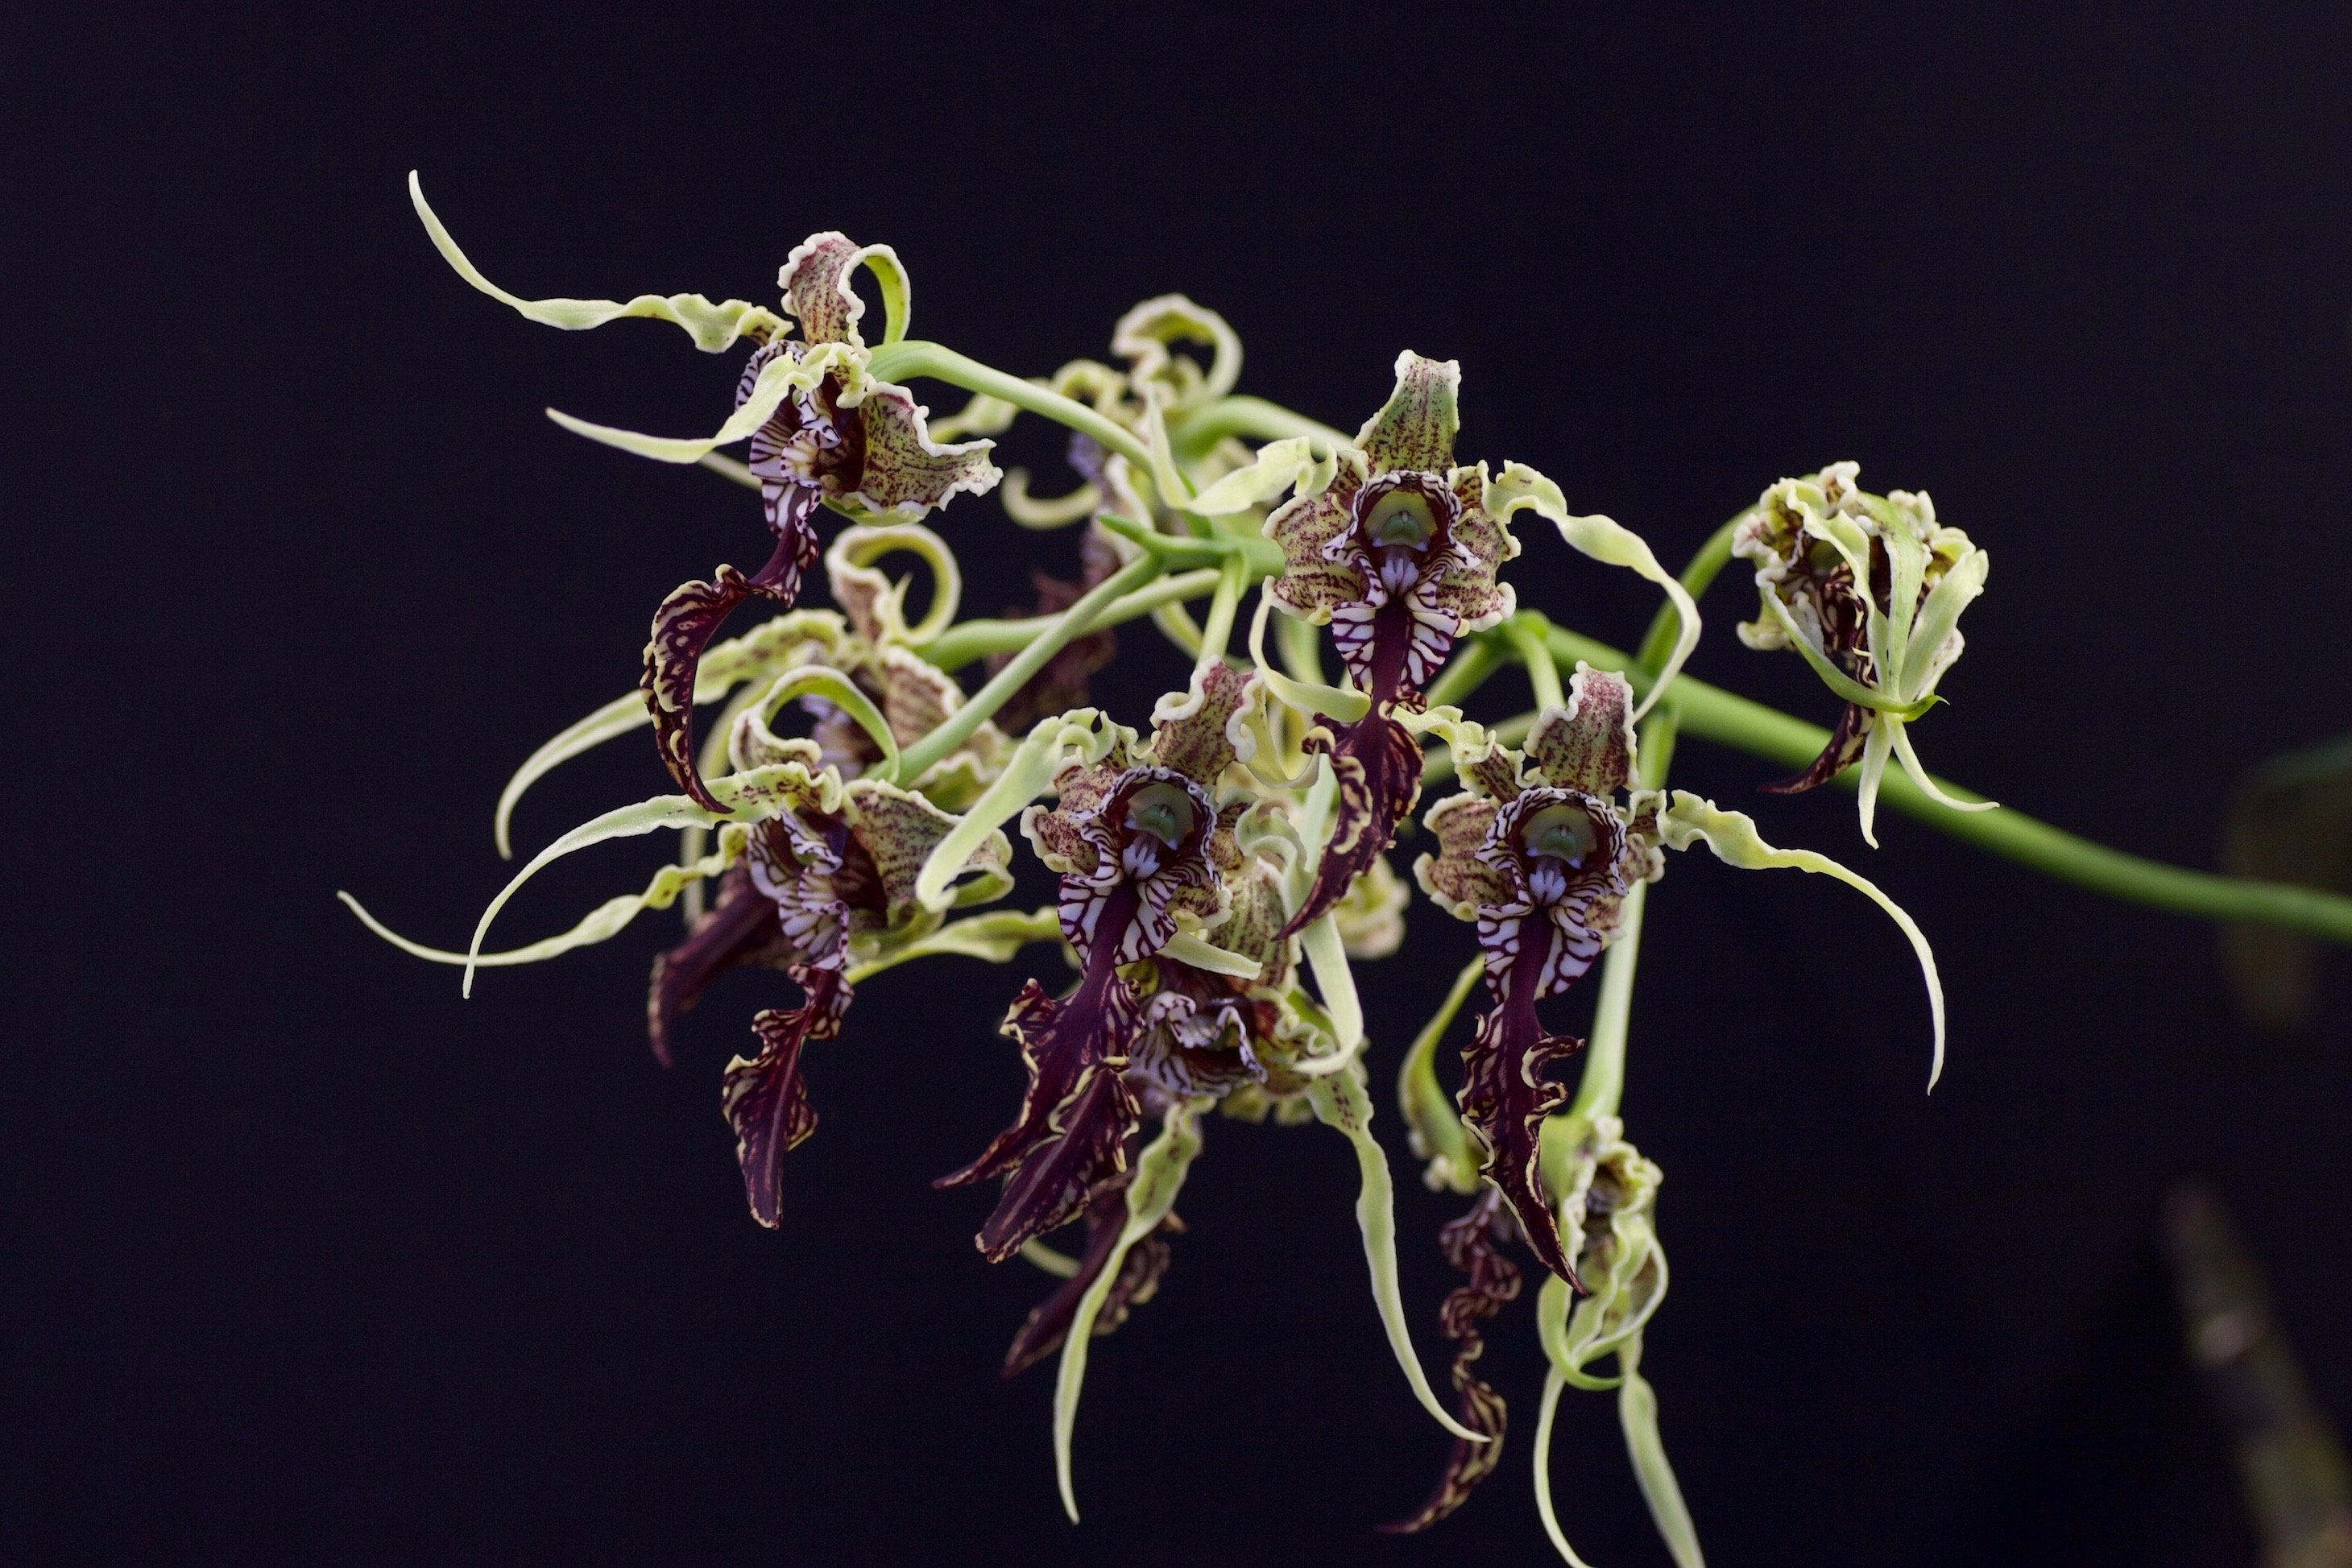 Dendrobium spectabile "Big Plant"